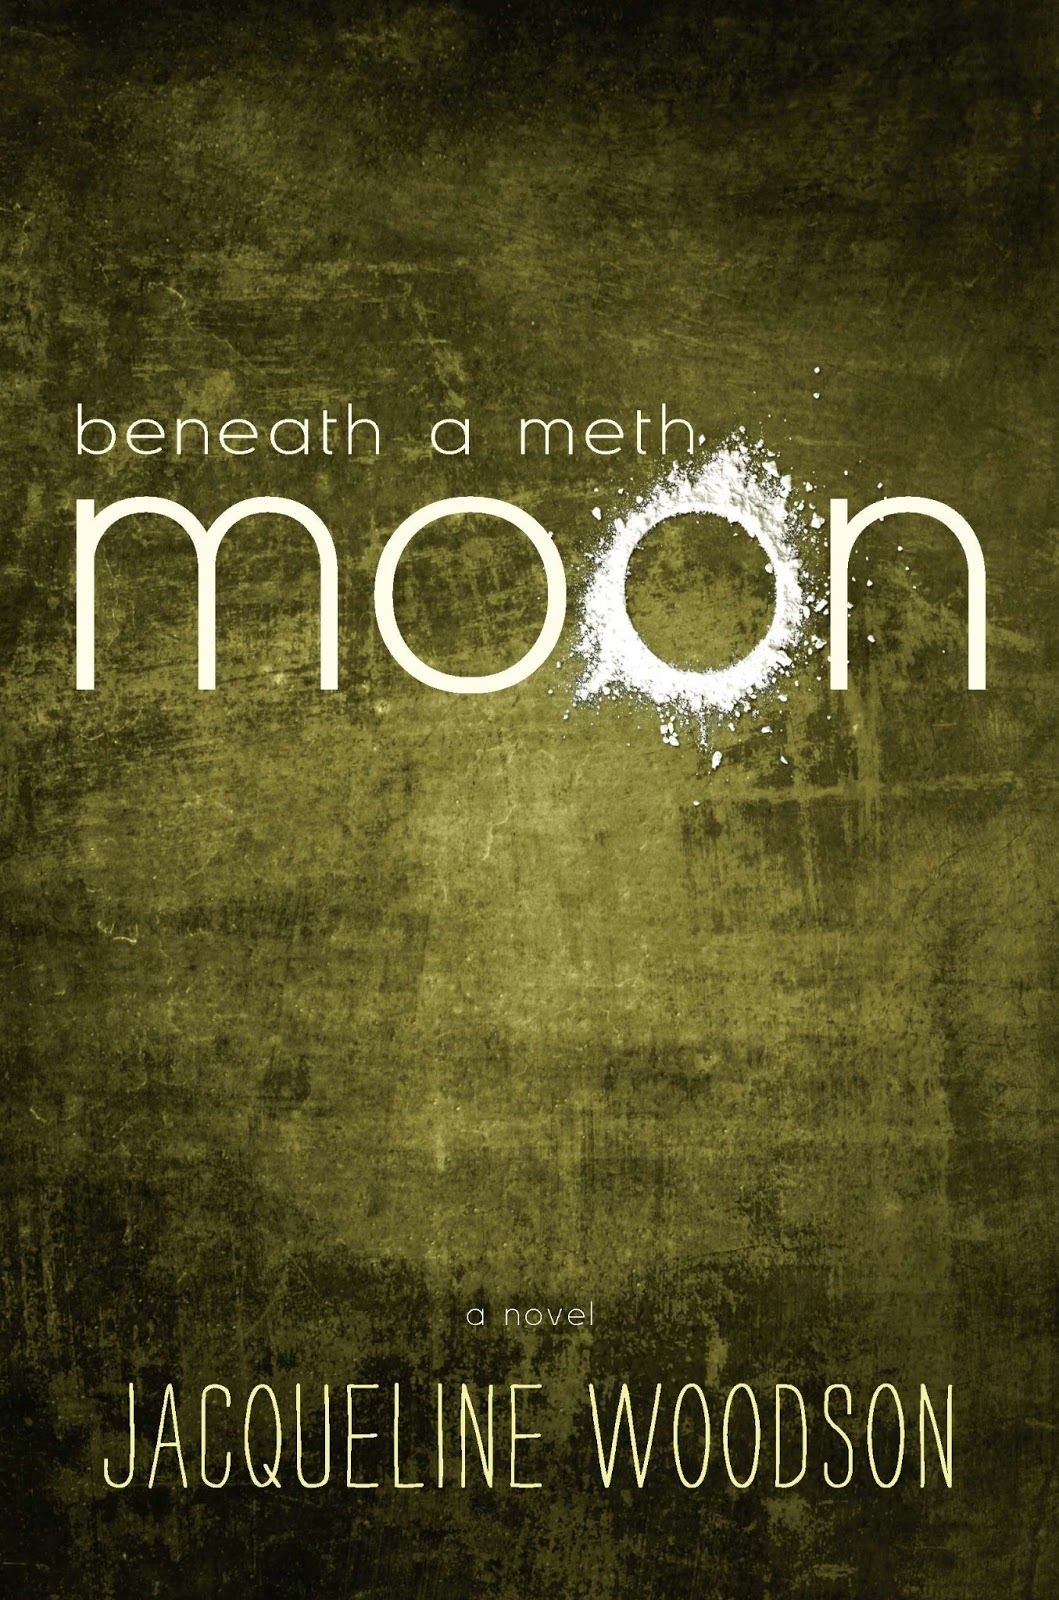 Beneath the moon. Voodoo Moon Cole.